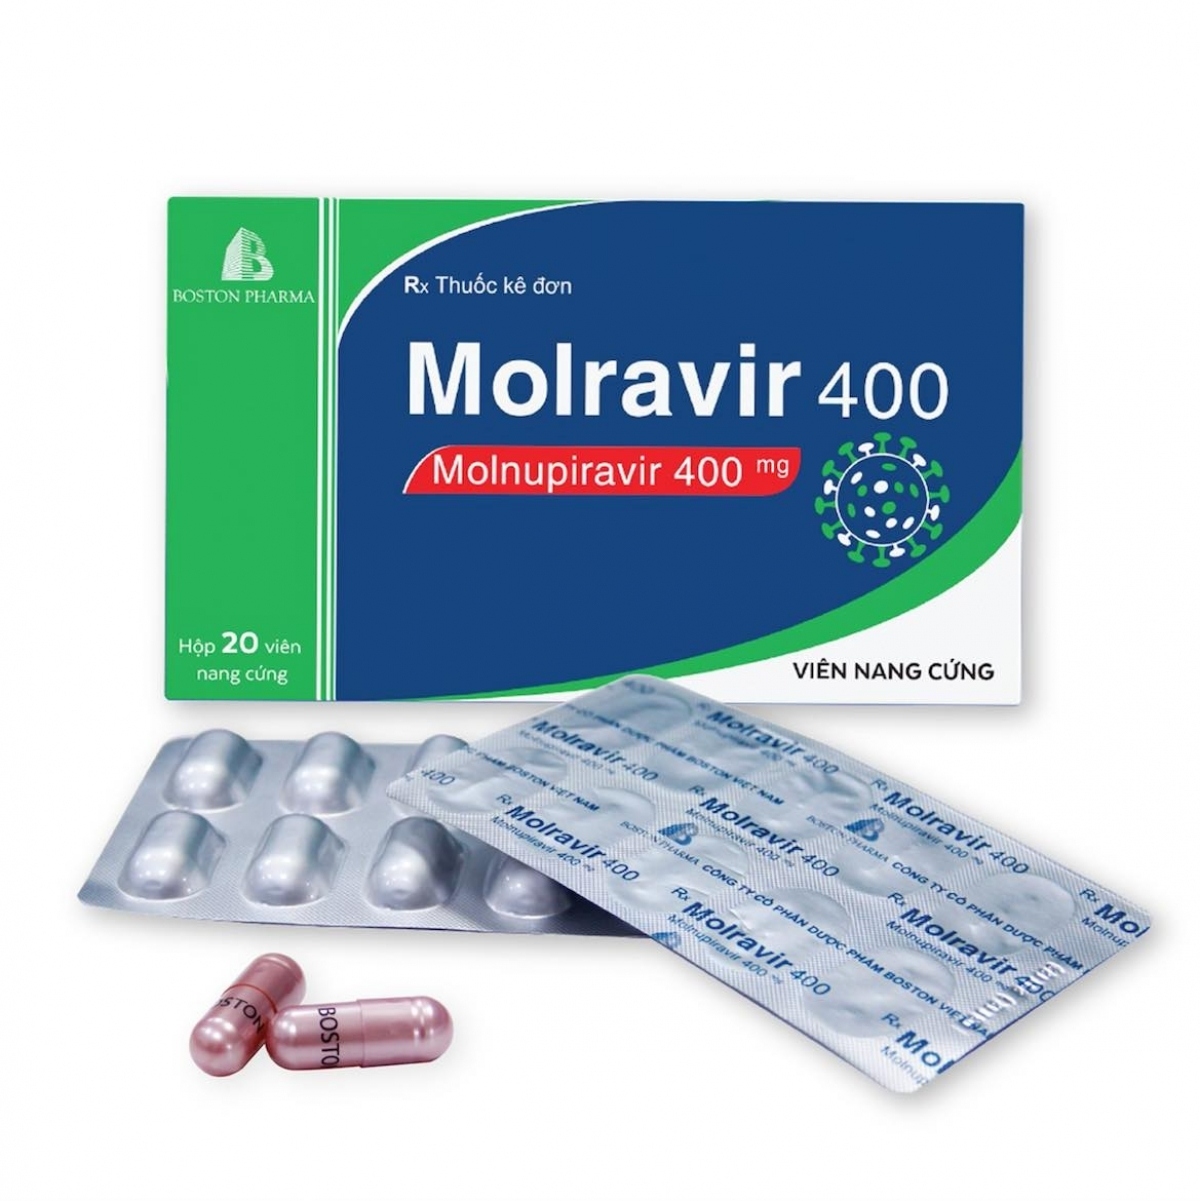 Thuốc Molnupiravir lđược tìm kiếm nhiều nhất mỗi khi người dân phát hiện mình đã dương tính với COVID-19.